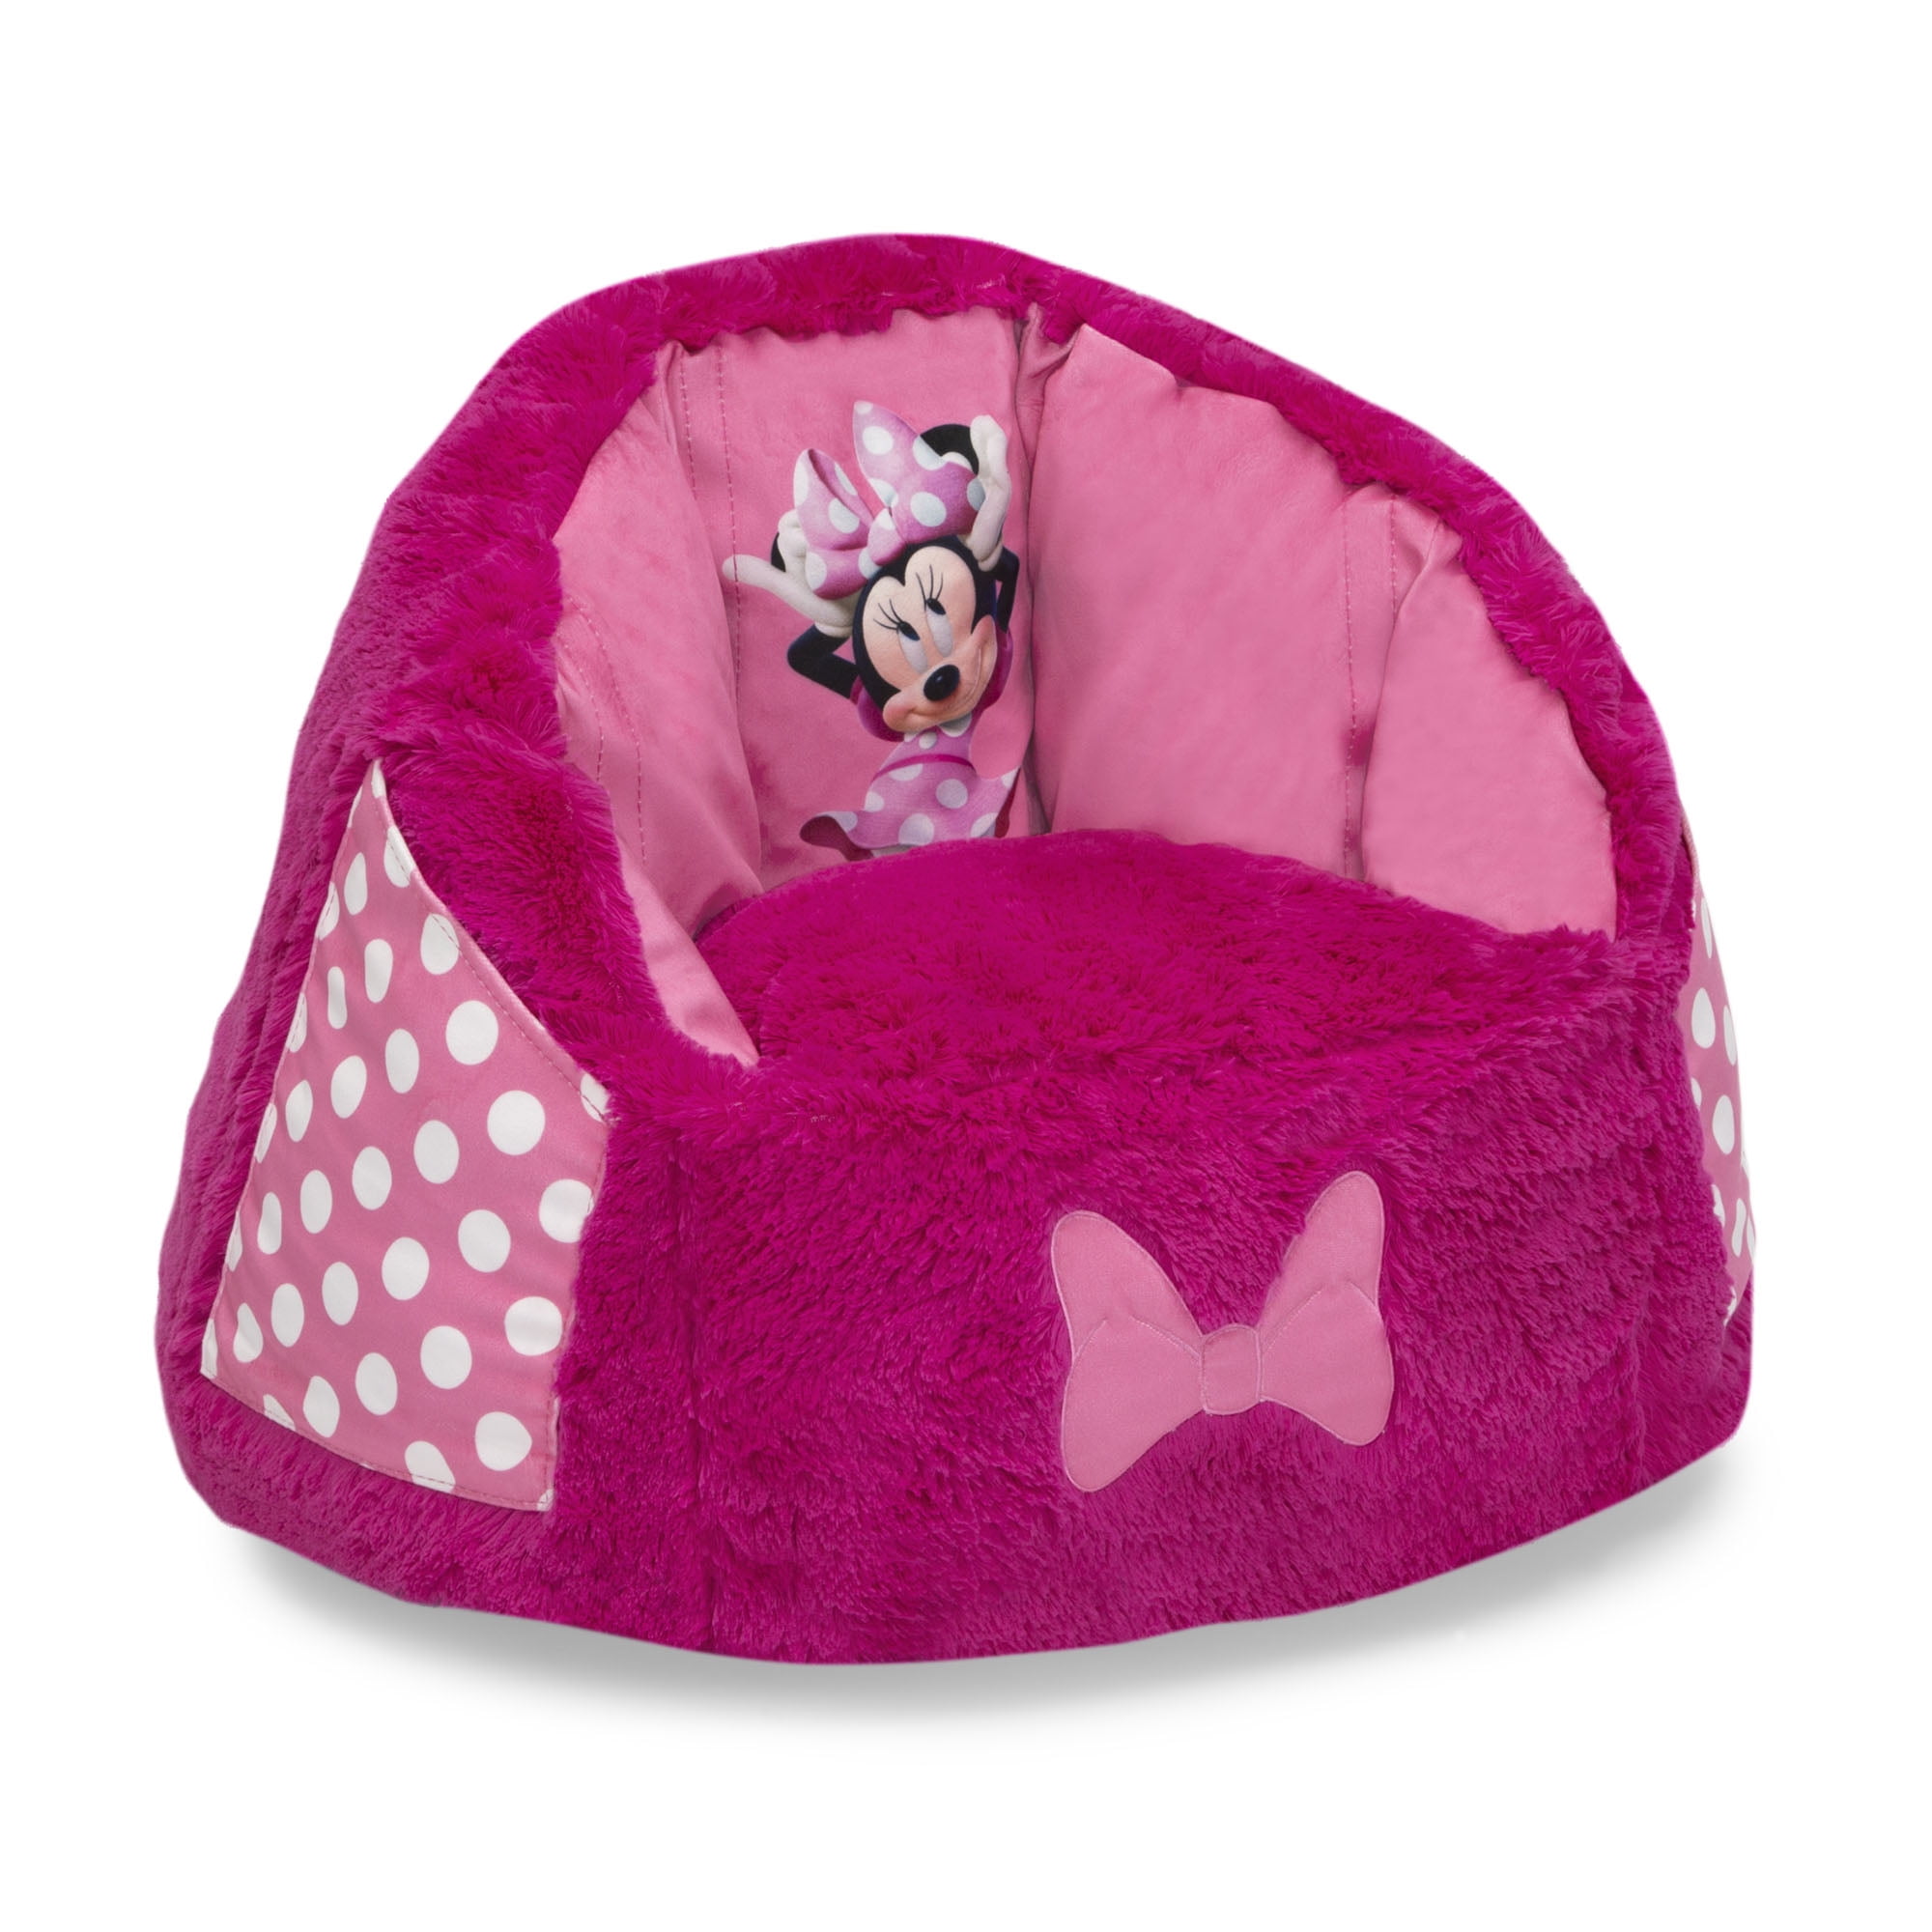 Disney Junior-Minnie Mouse Kids Stuffed Bean Bag Pouf Cushion Chair Pink/Black 